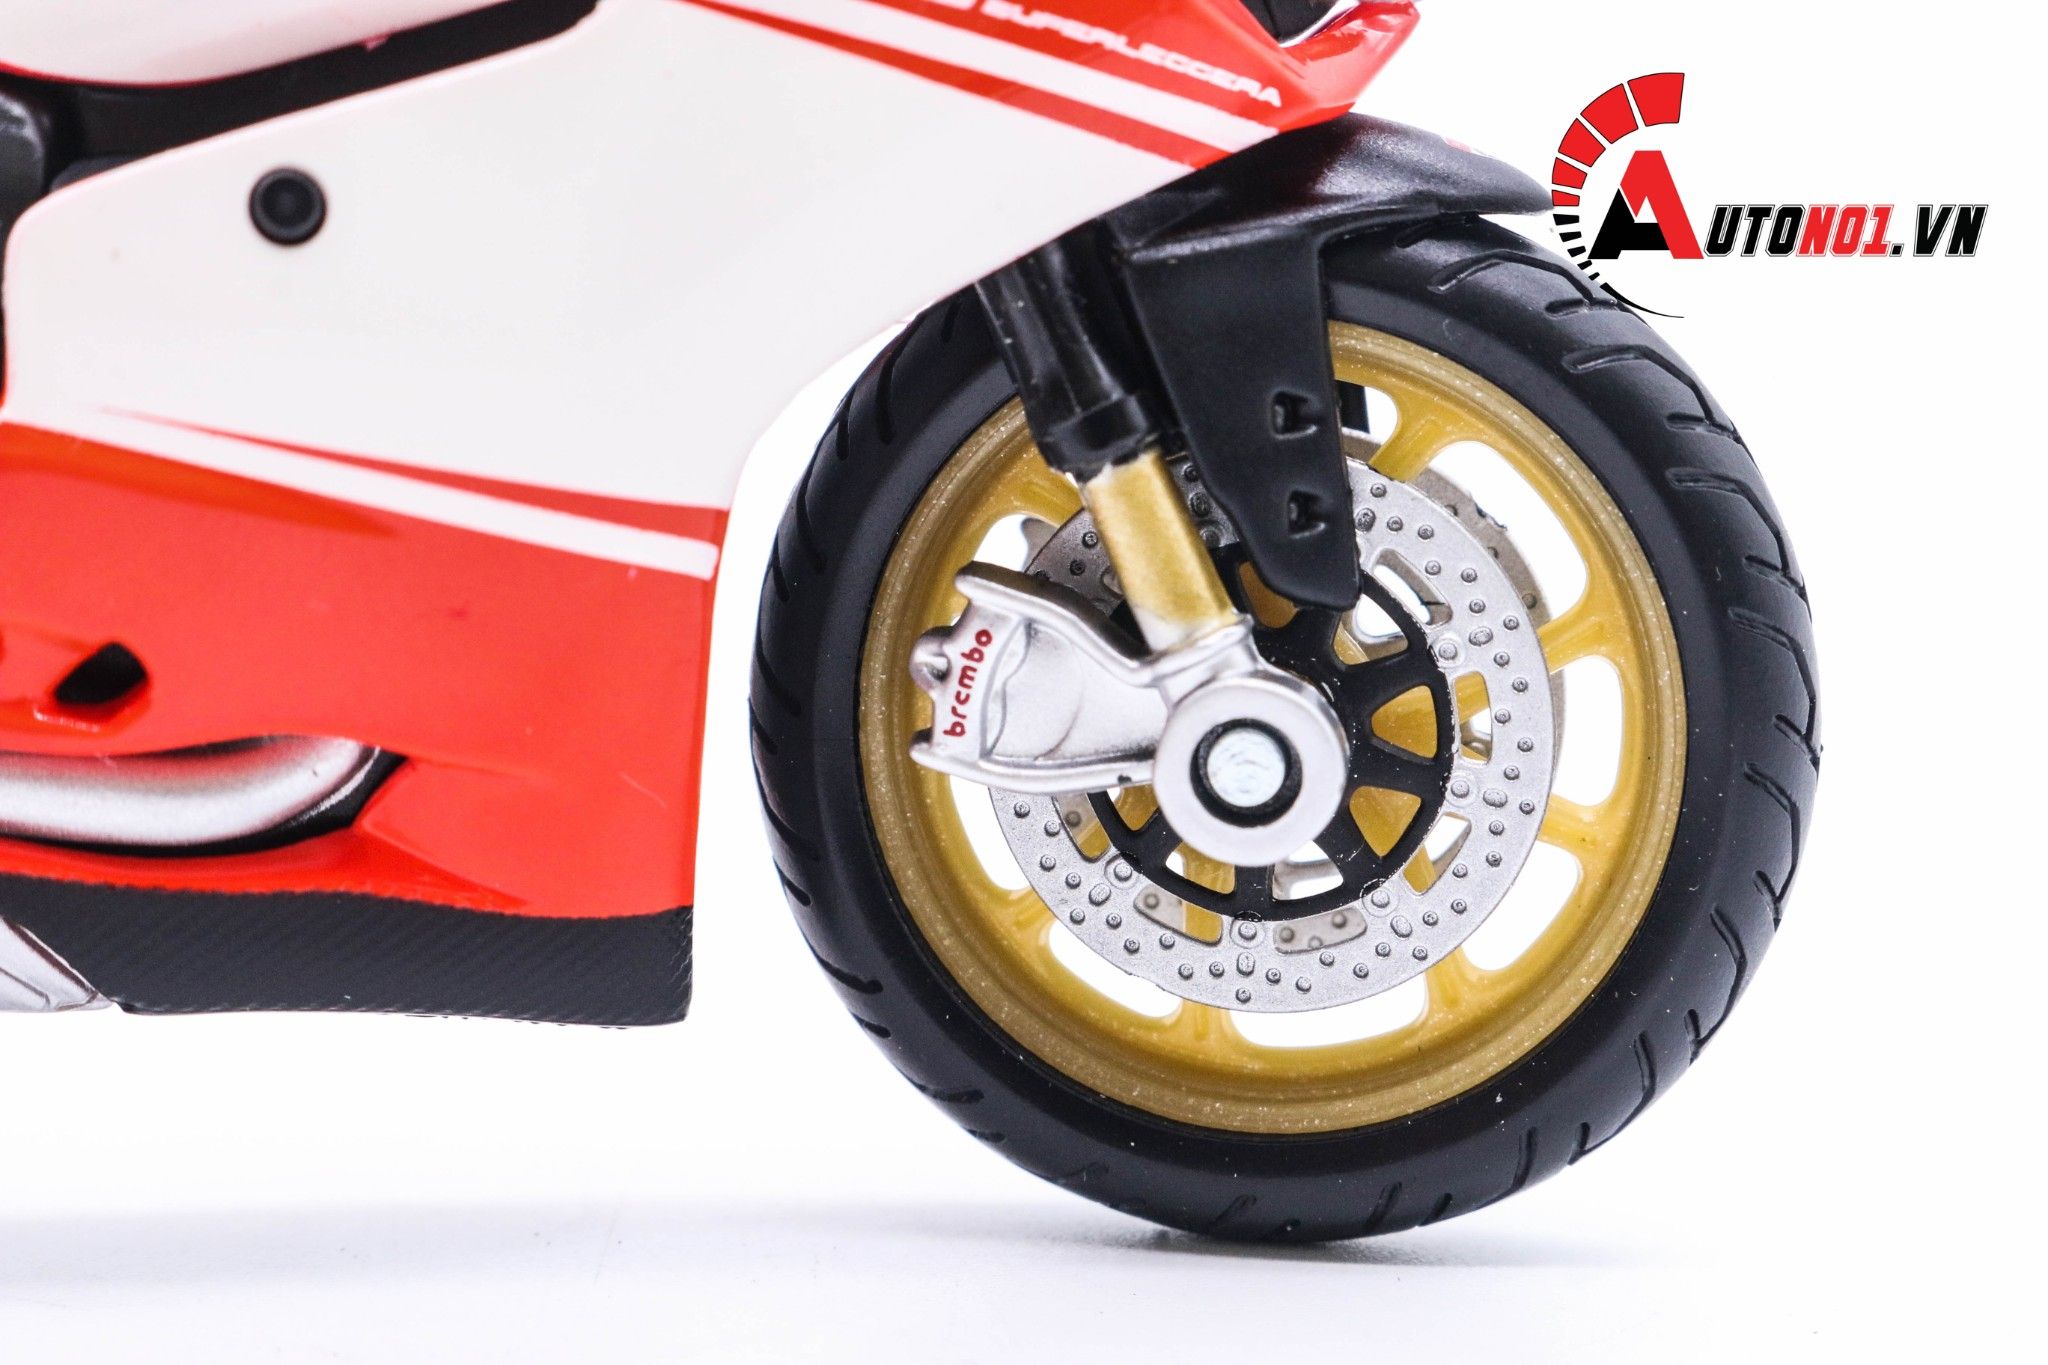  Mô hình xe mô tô Ducati 1199 Superleggera 2014 1:18 Maisto 1017 